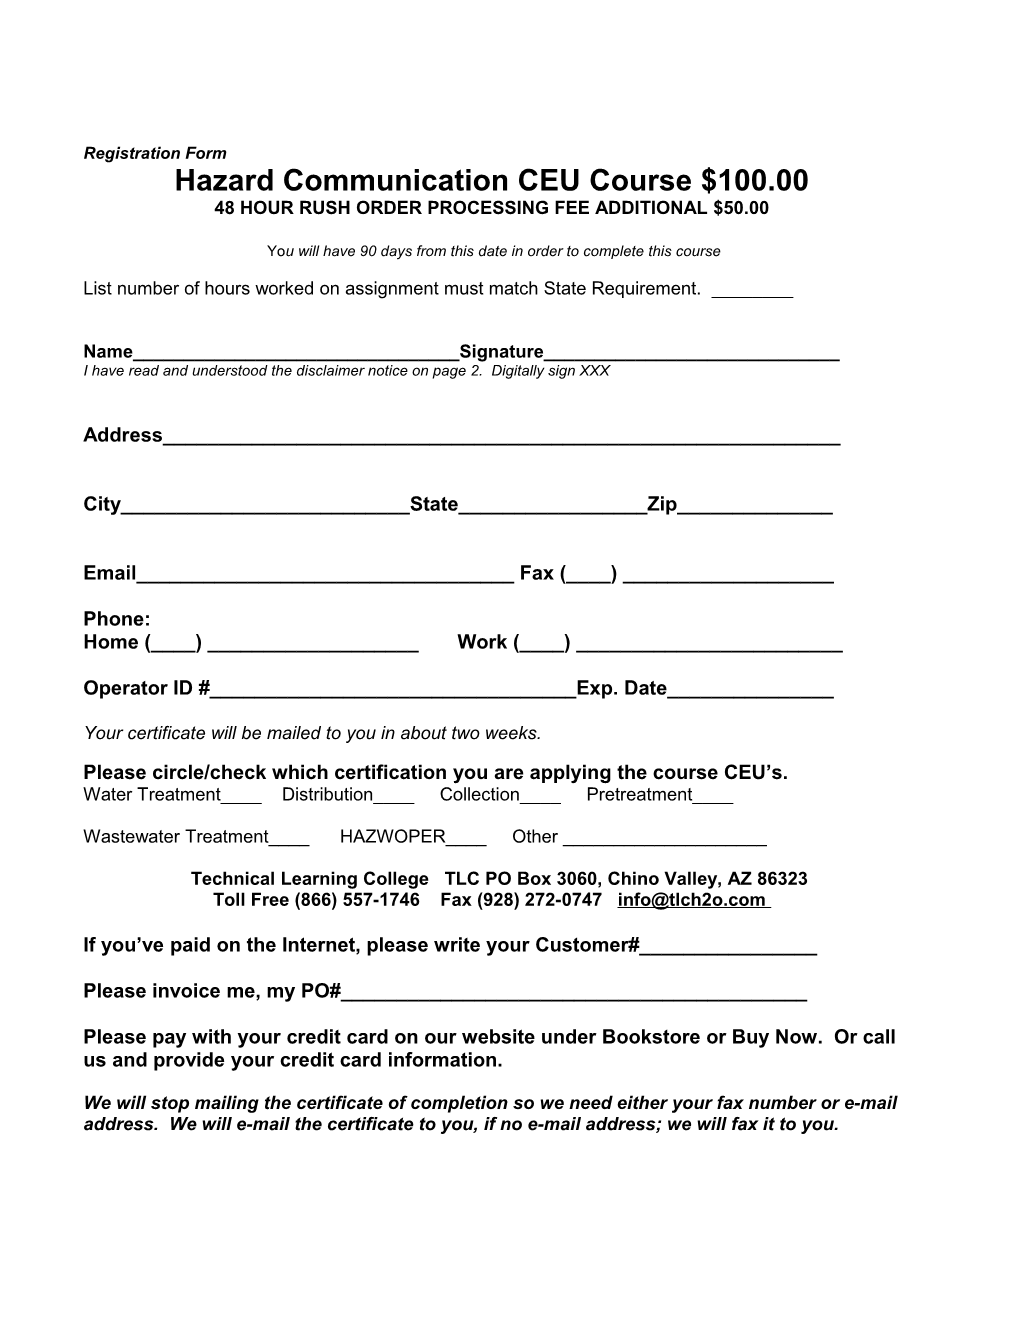 Hazard Communication CEU Course $100.00